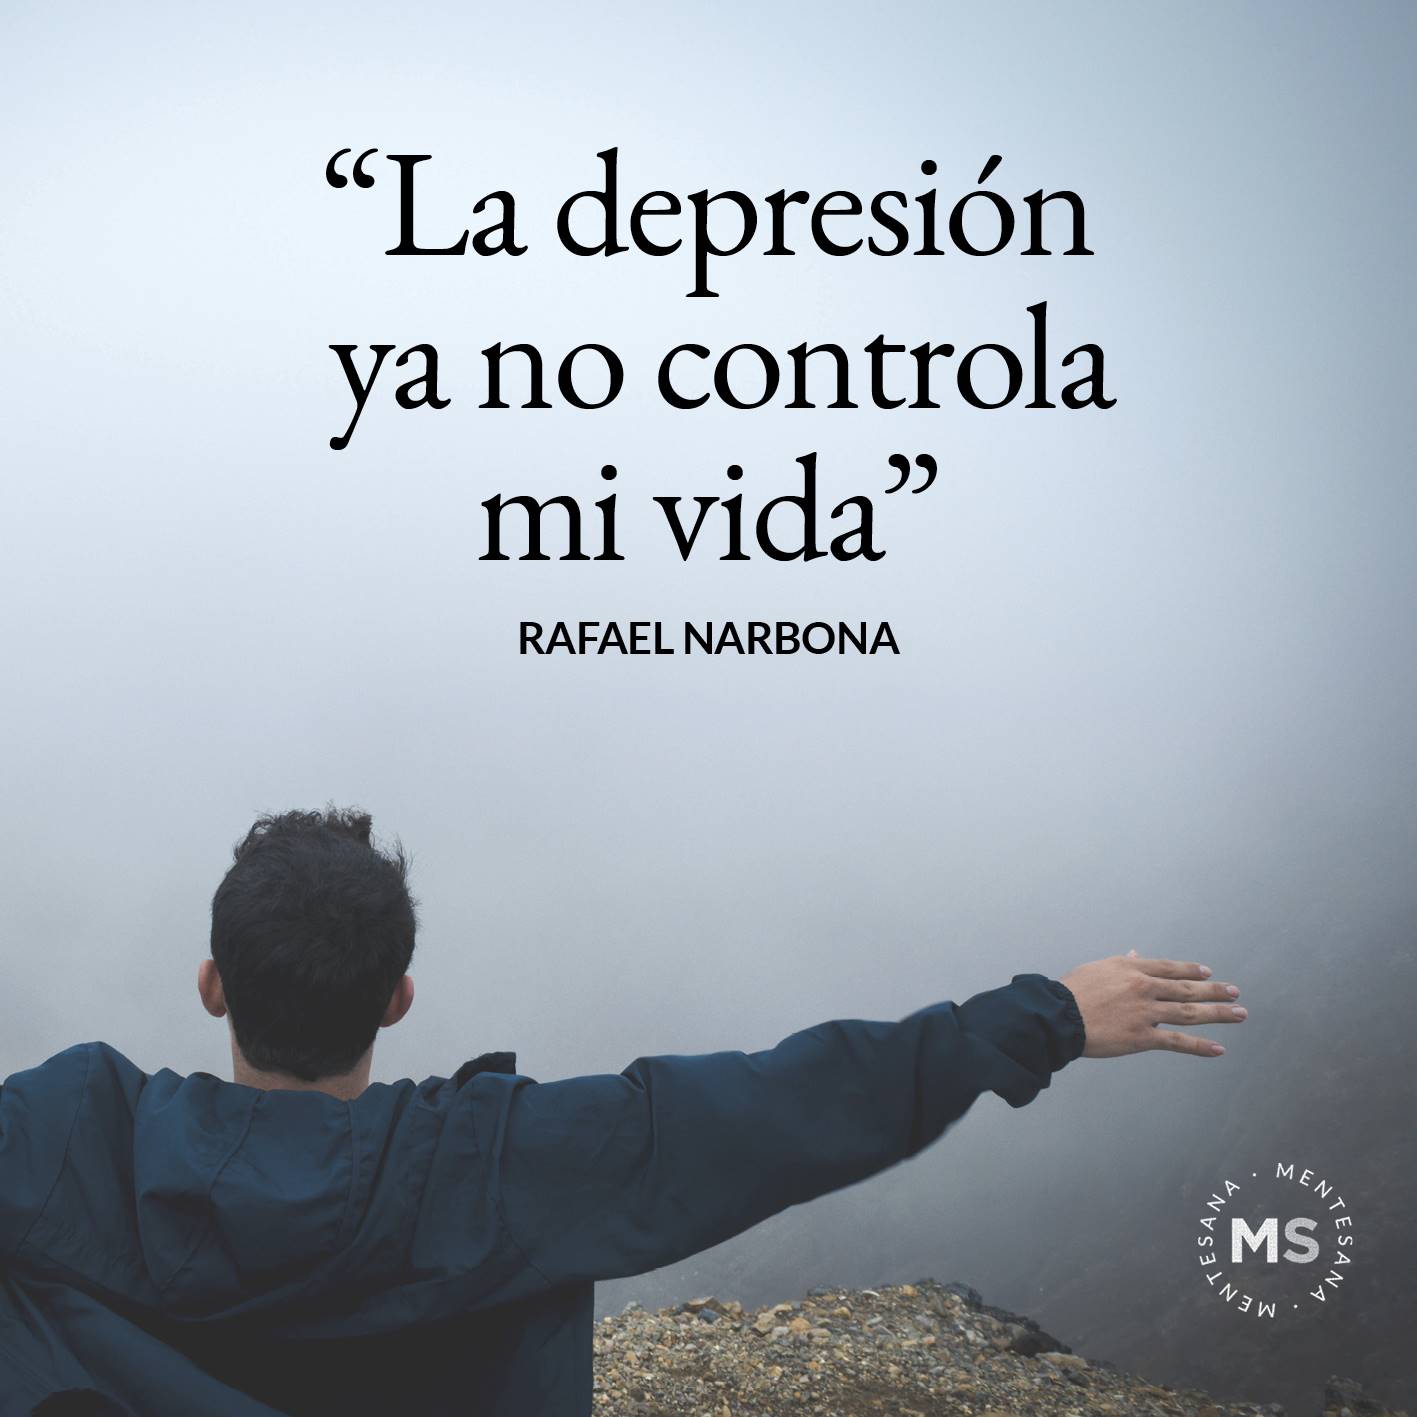 FRASES DIA DE LA DEPRESION6. ‘‘La depresión ya no controla mi vida.’’ Rafael Narbona